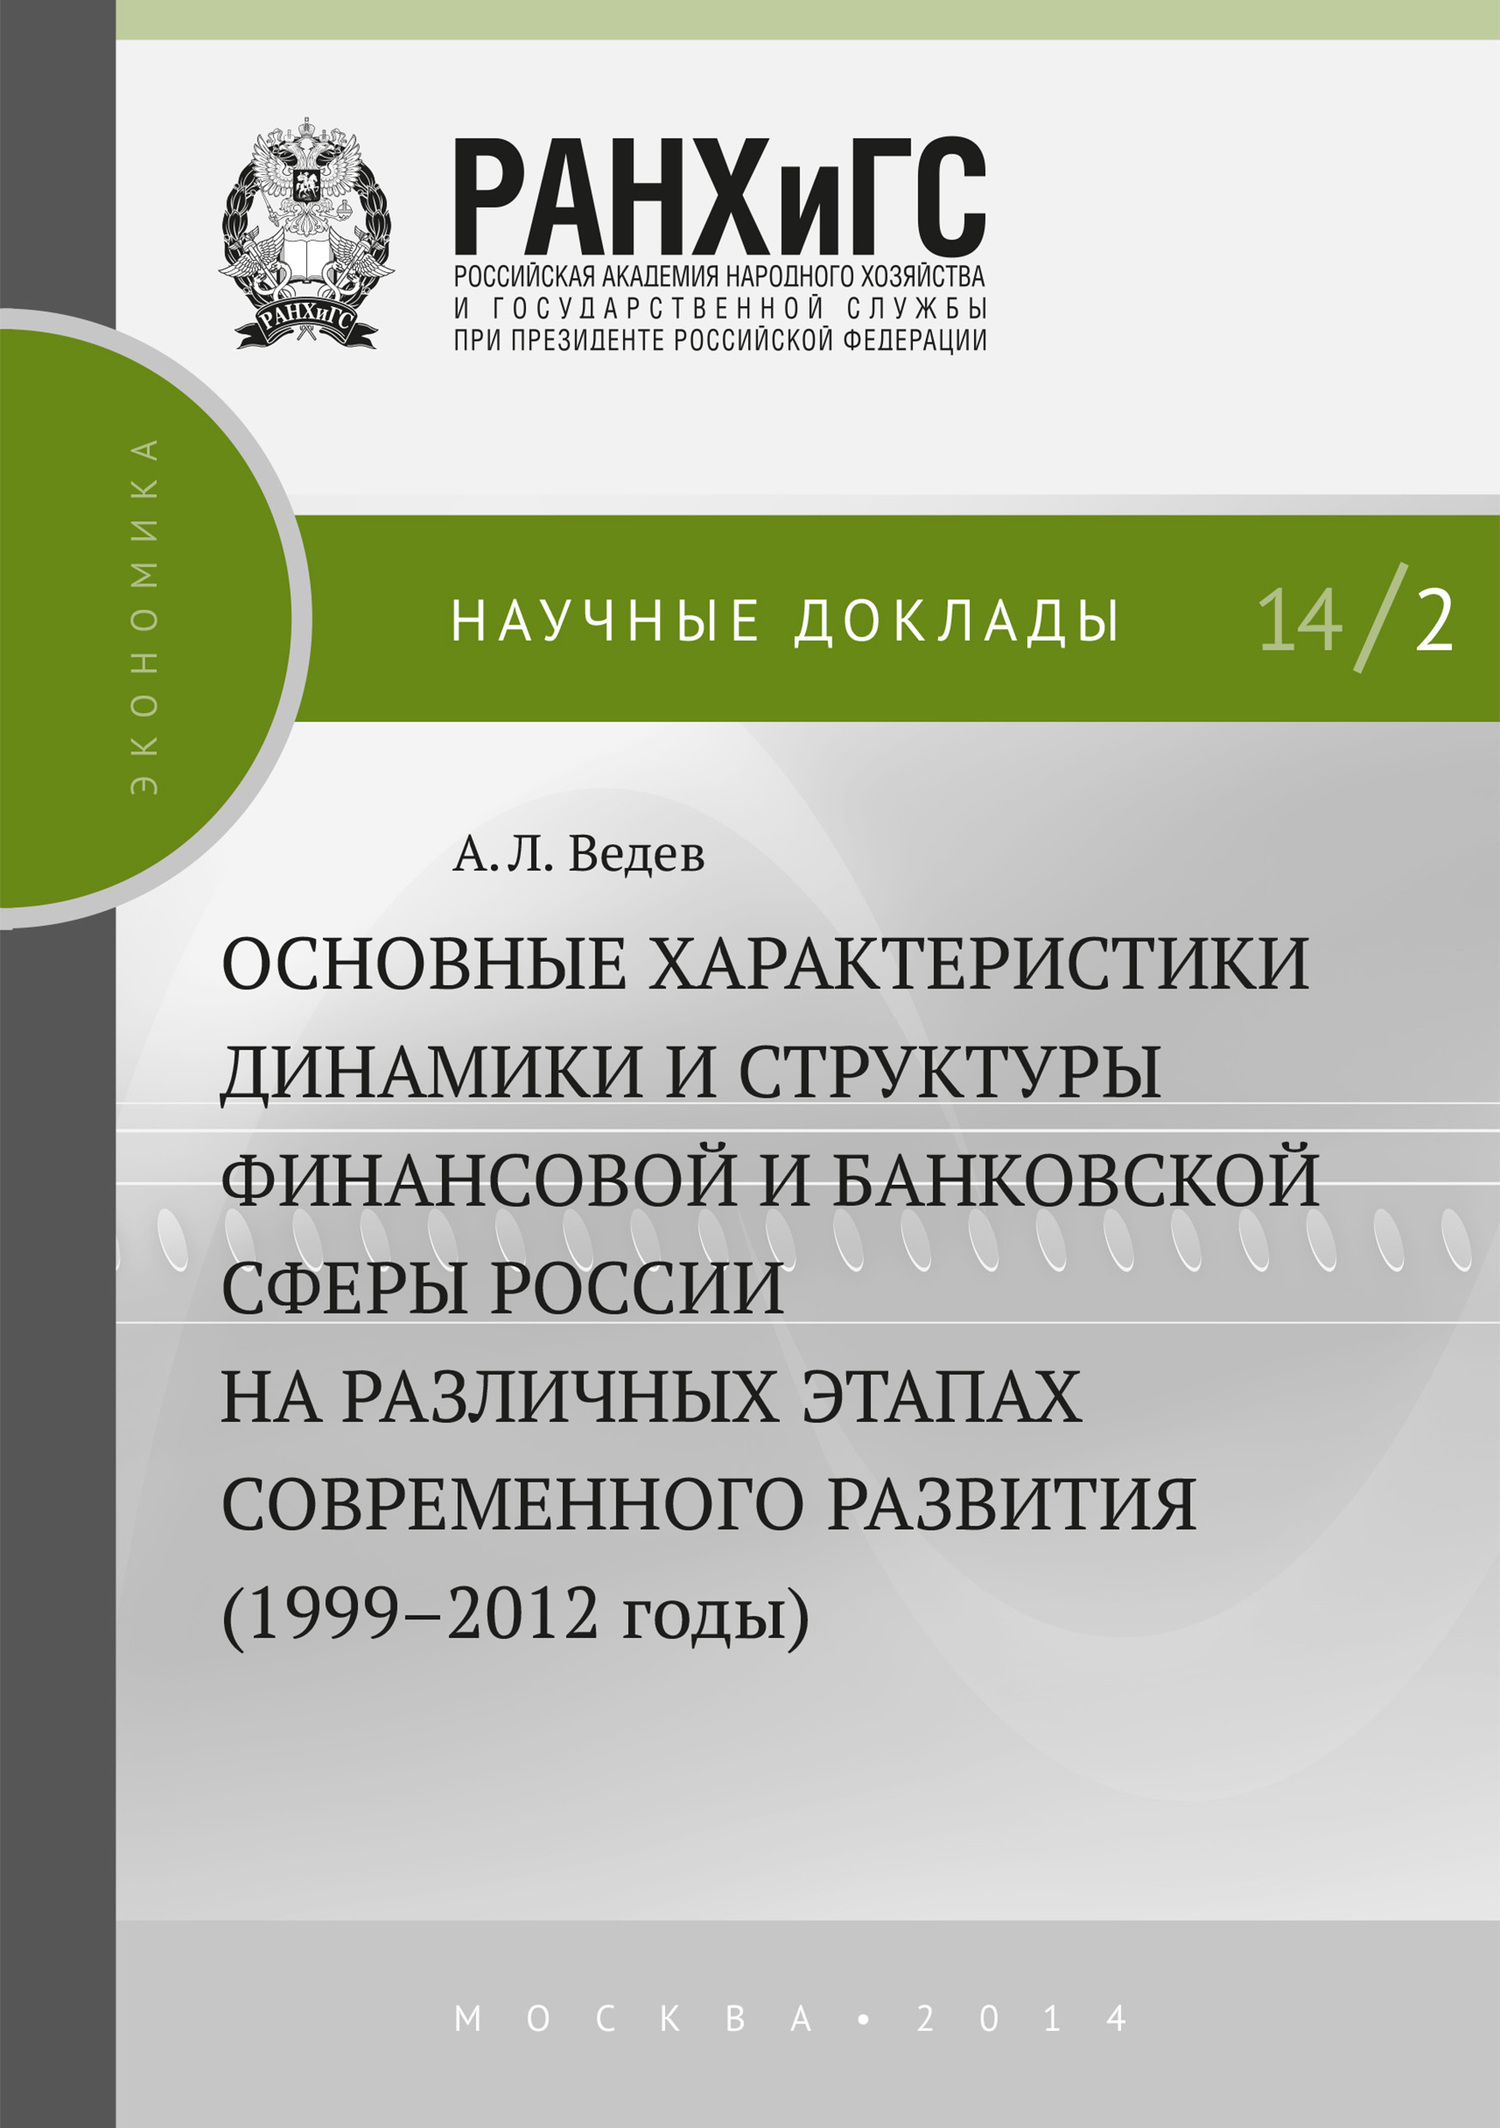 Скачать Основные характеристики динамики и структуры финансовой и банковской сферы России на различных этапах современного развития (1999-2012 годы) быстро